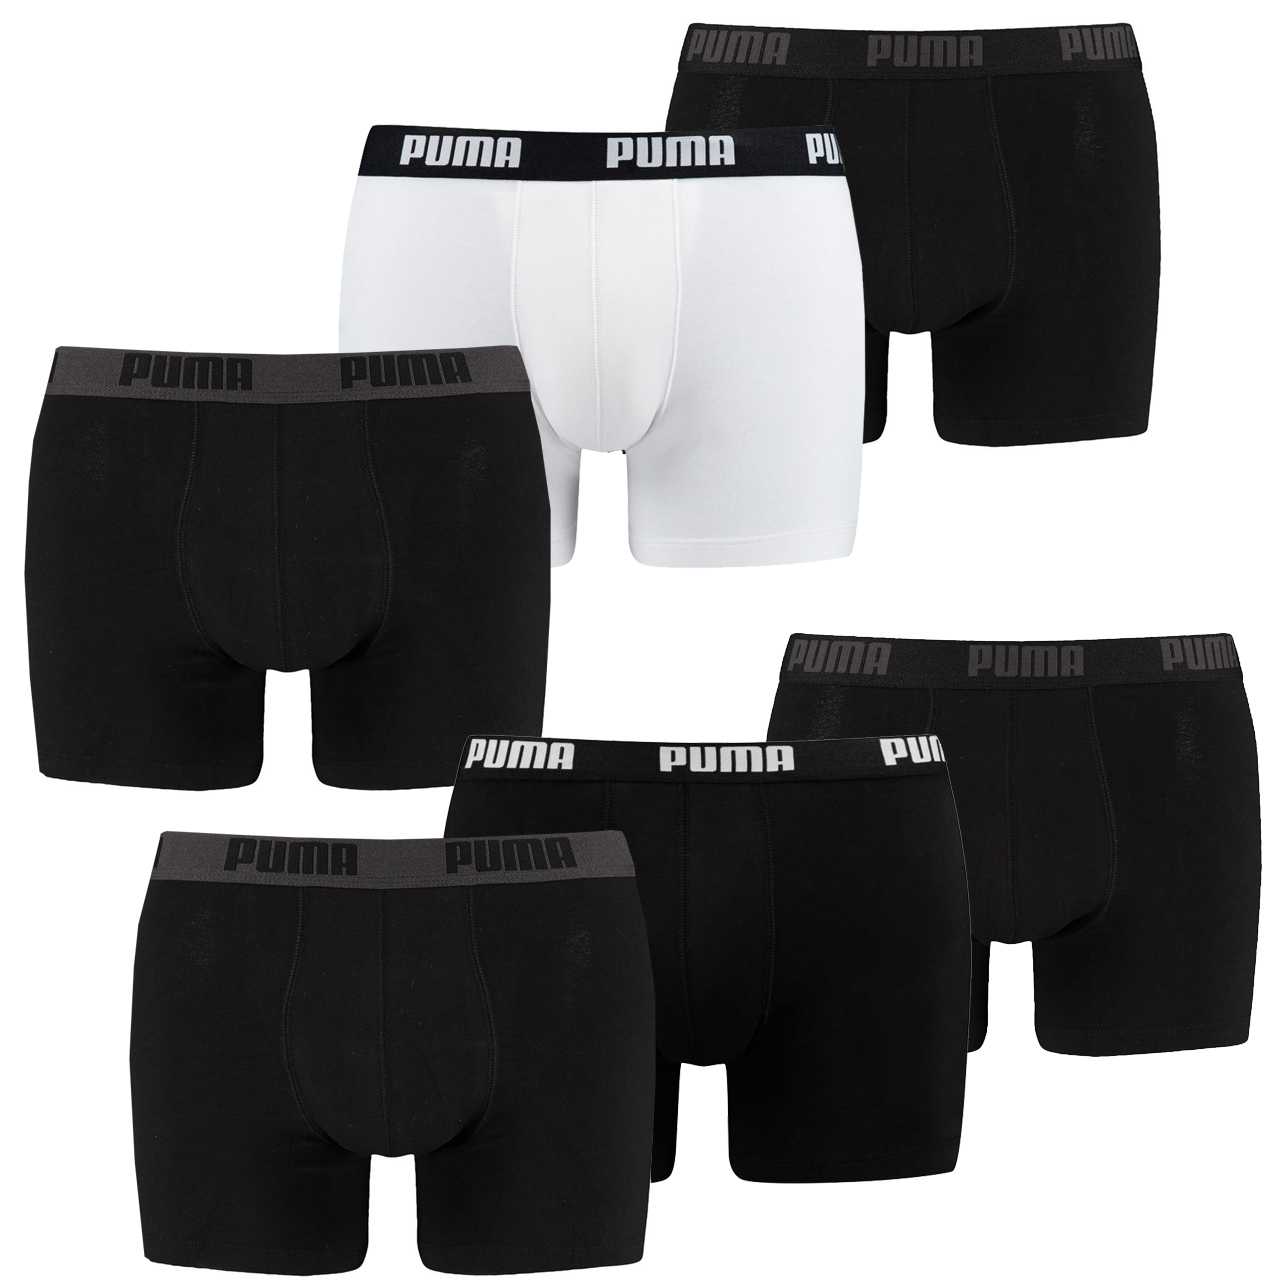 6 er Pack Puma Boxer Boxershorts Herren Unterwäsche sportliche Retro Pants